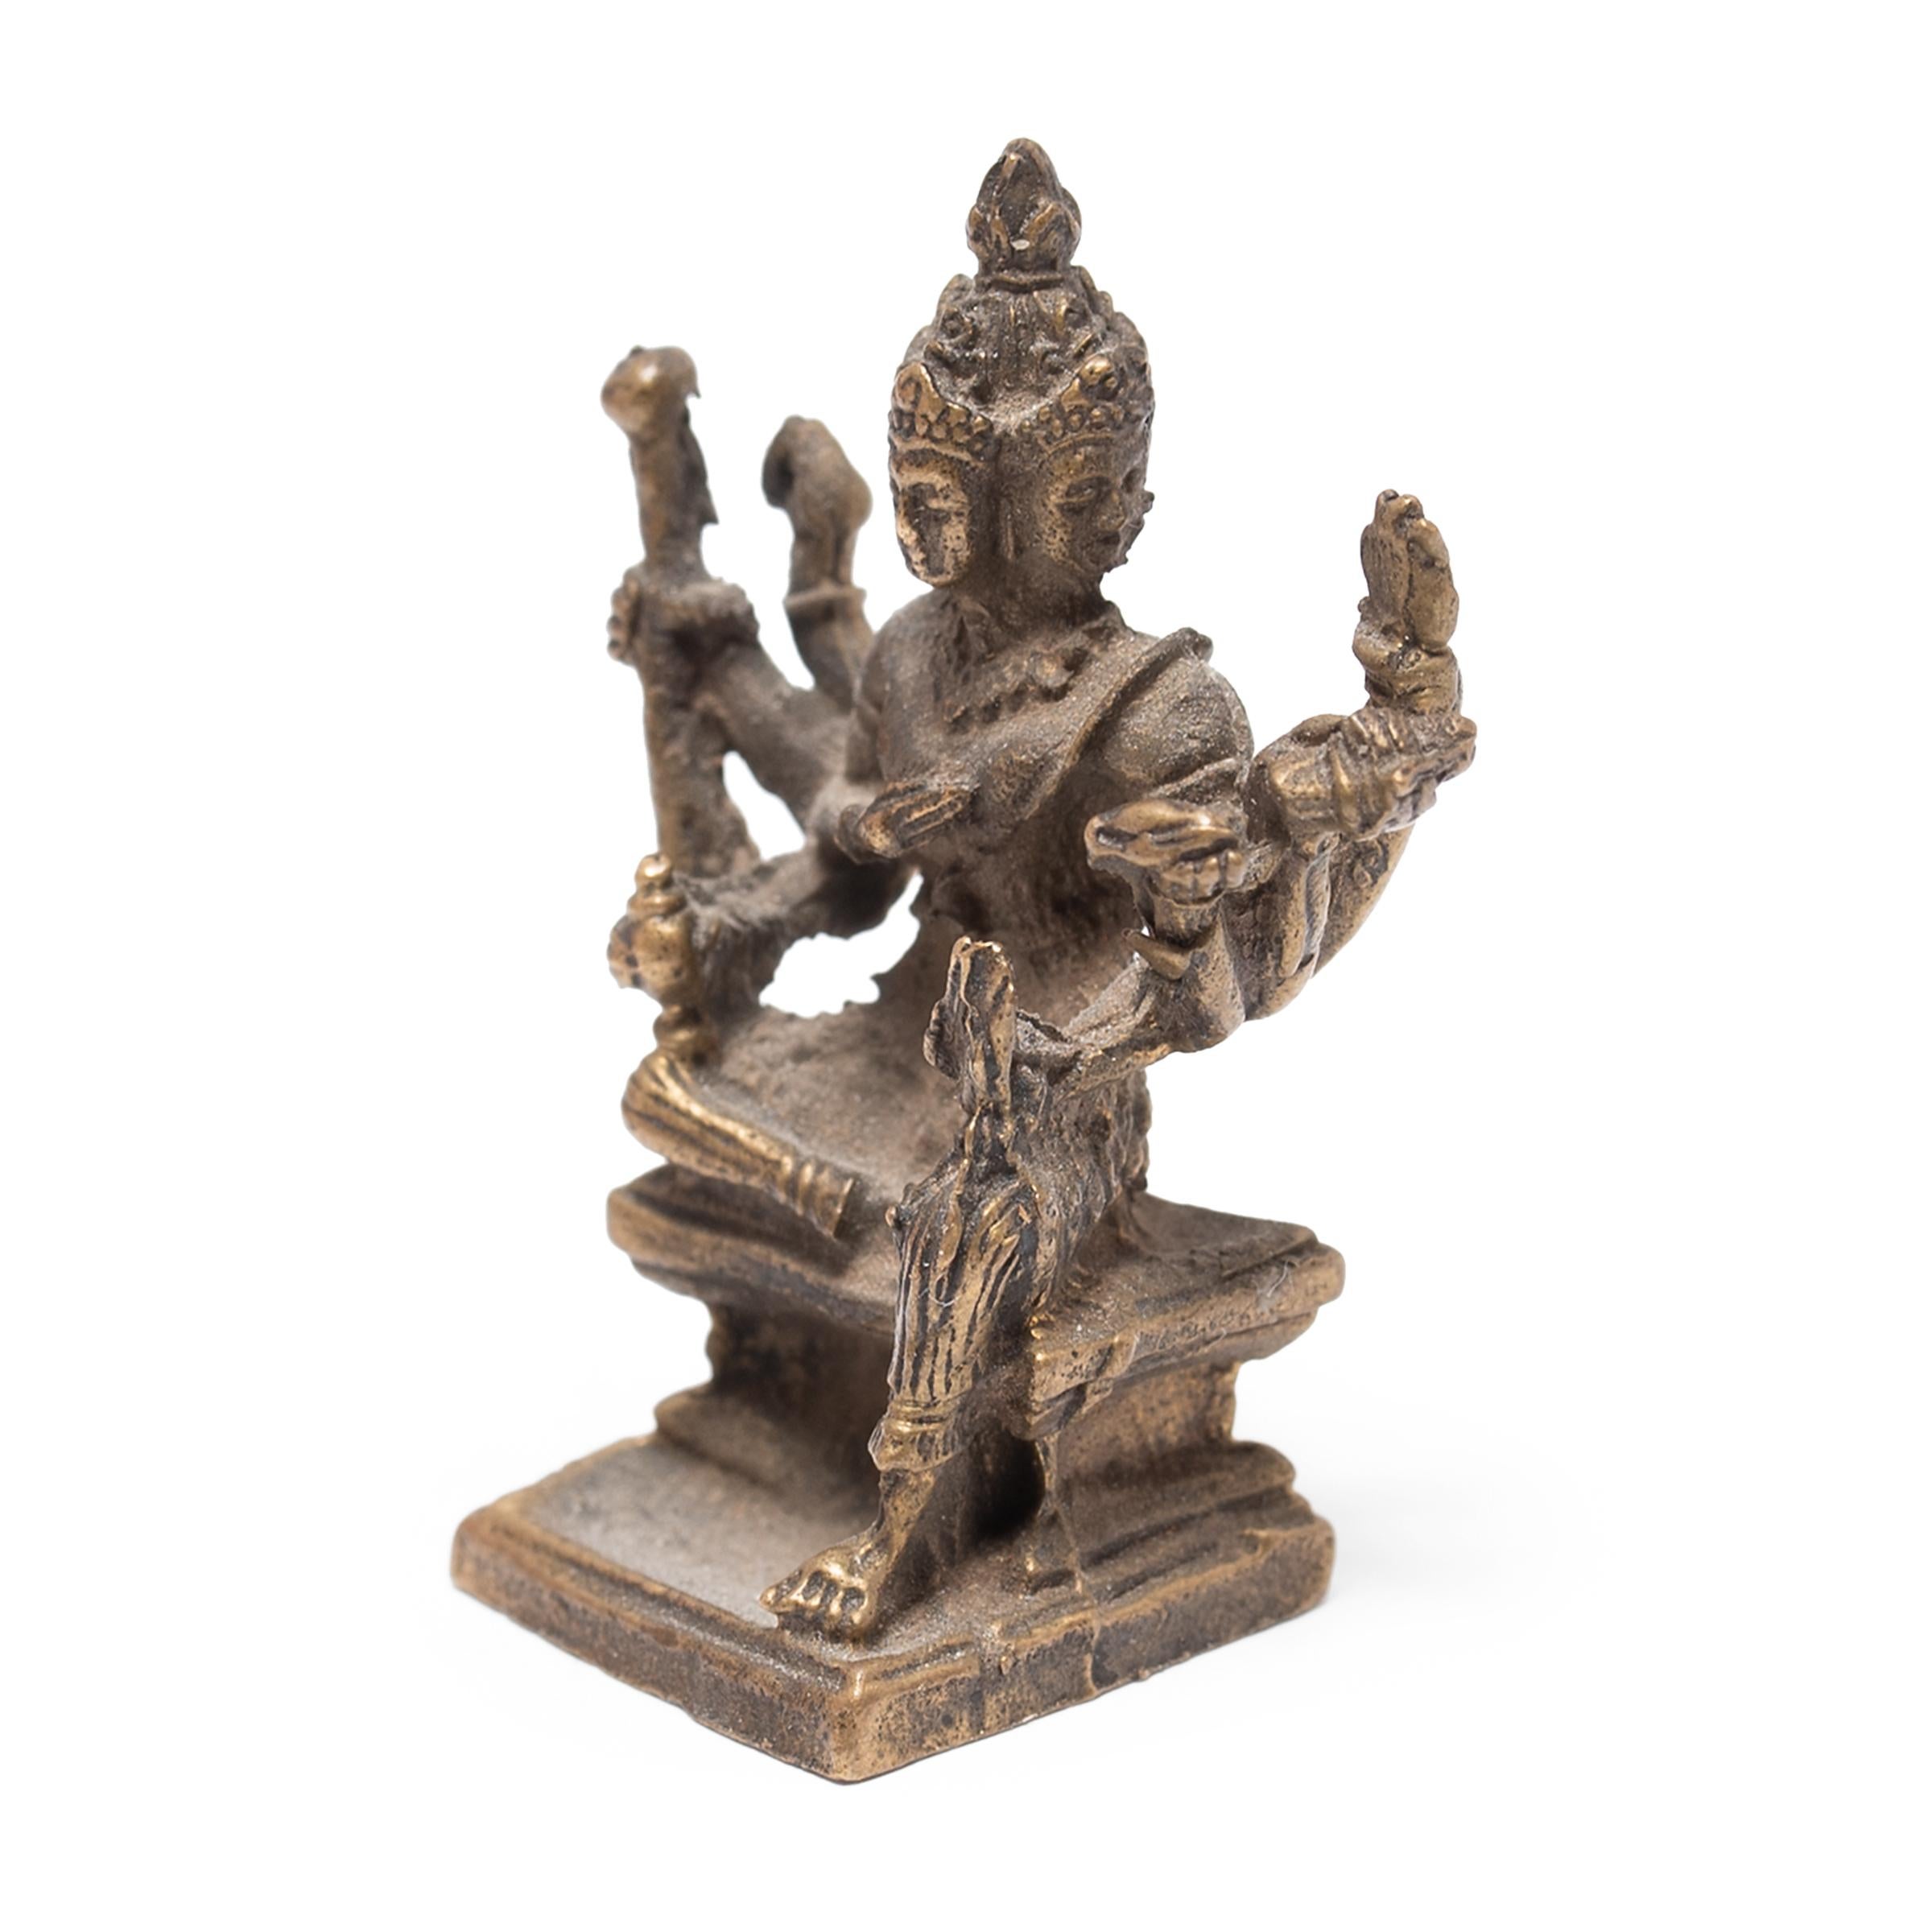 Cette petite sculpture en laiton représente la déesse à huit bras Mahapratisara, vénérée dans le bouddhisme tibétain comme un bodhisattva protecteur et garant de la prospérité. Elle est considérée comme une émanation du Bouddha Ratnasambhava, l'un